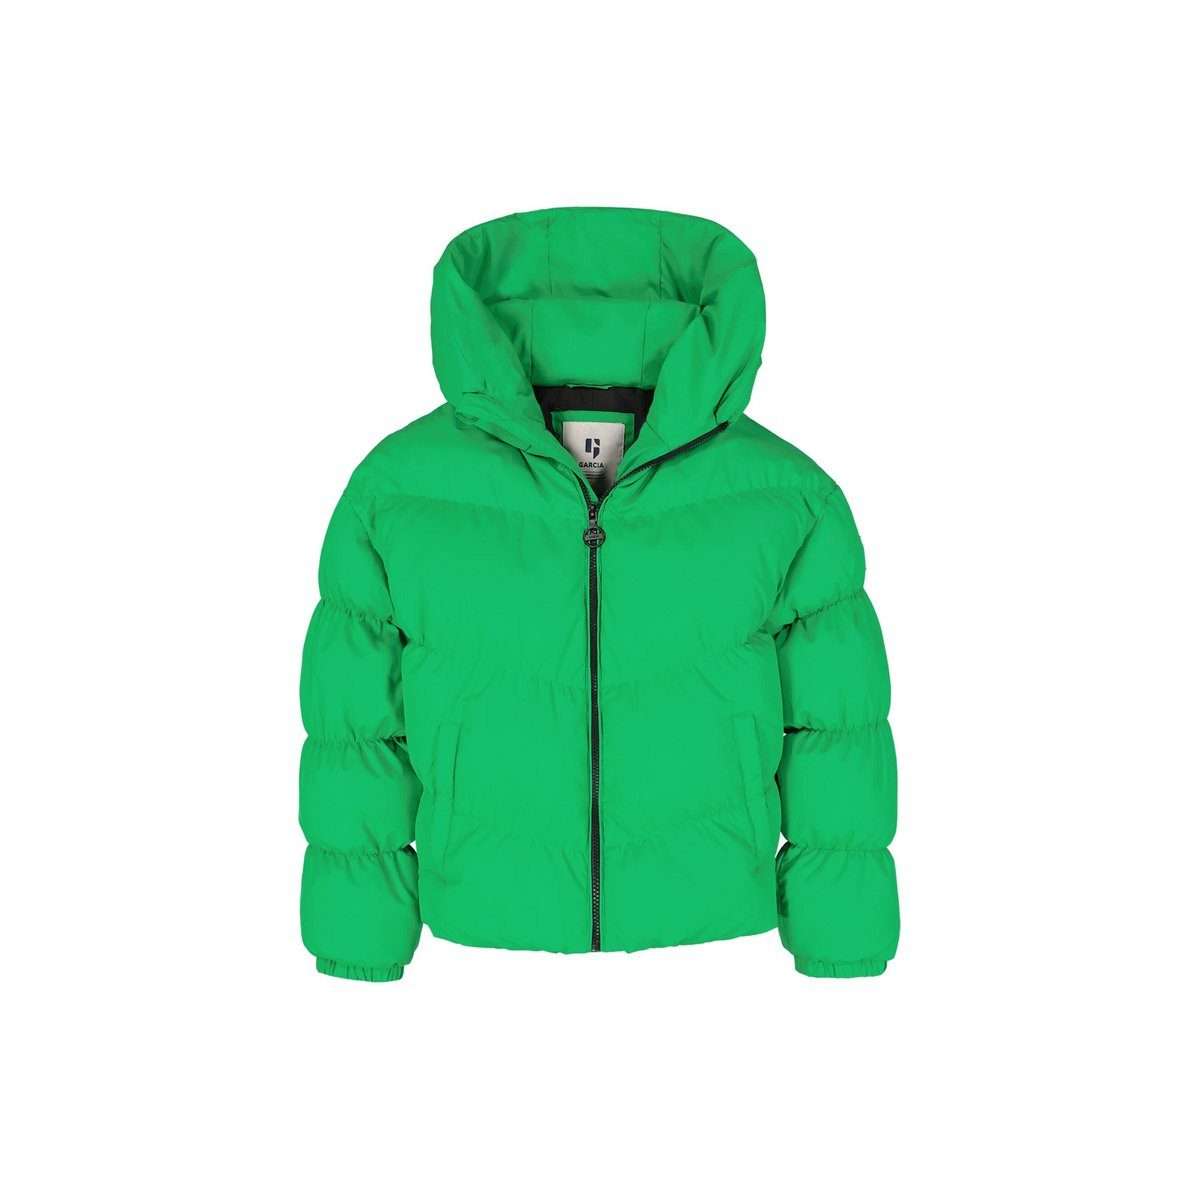 Функциональная куртка 3-в-1 светло-зеленого цвета (1 шт.)